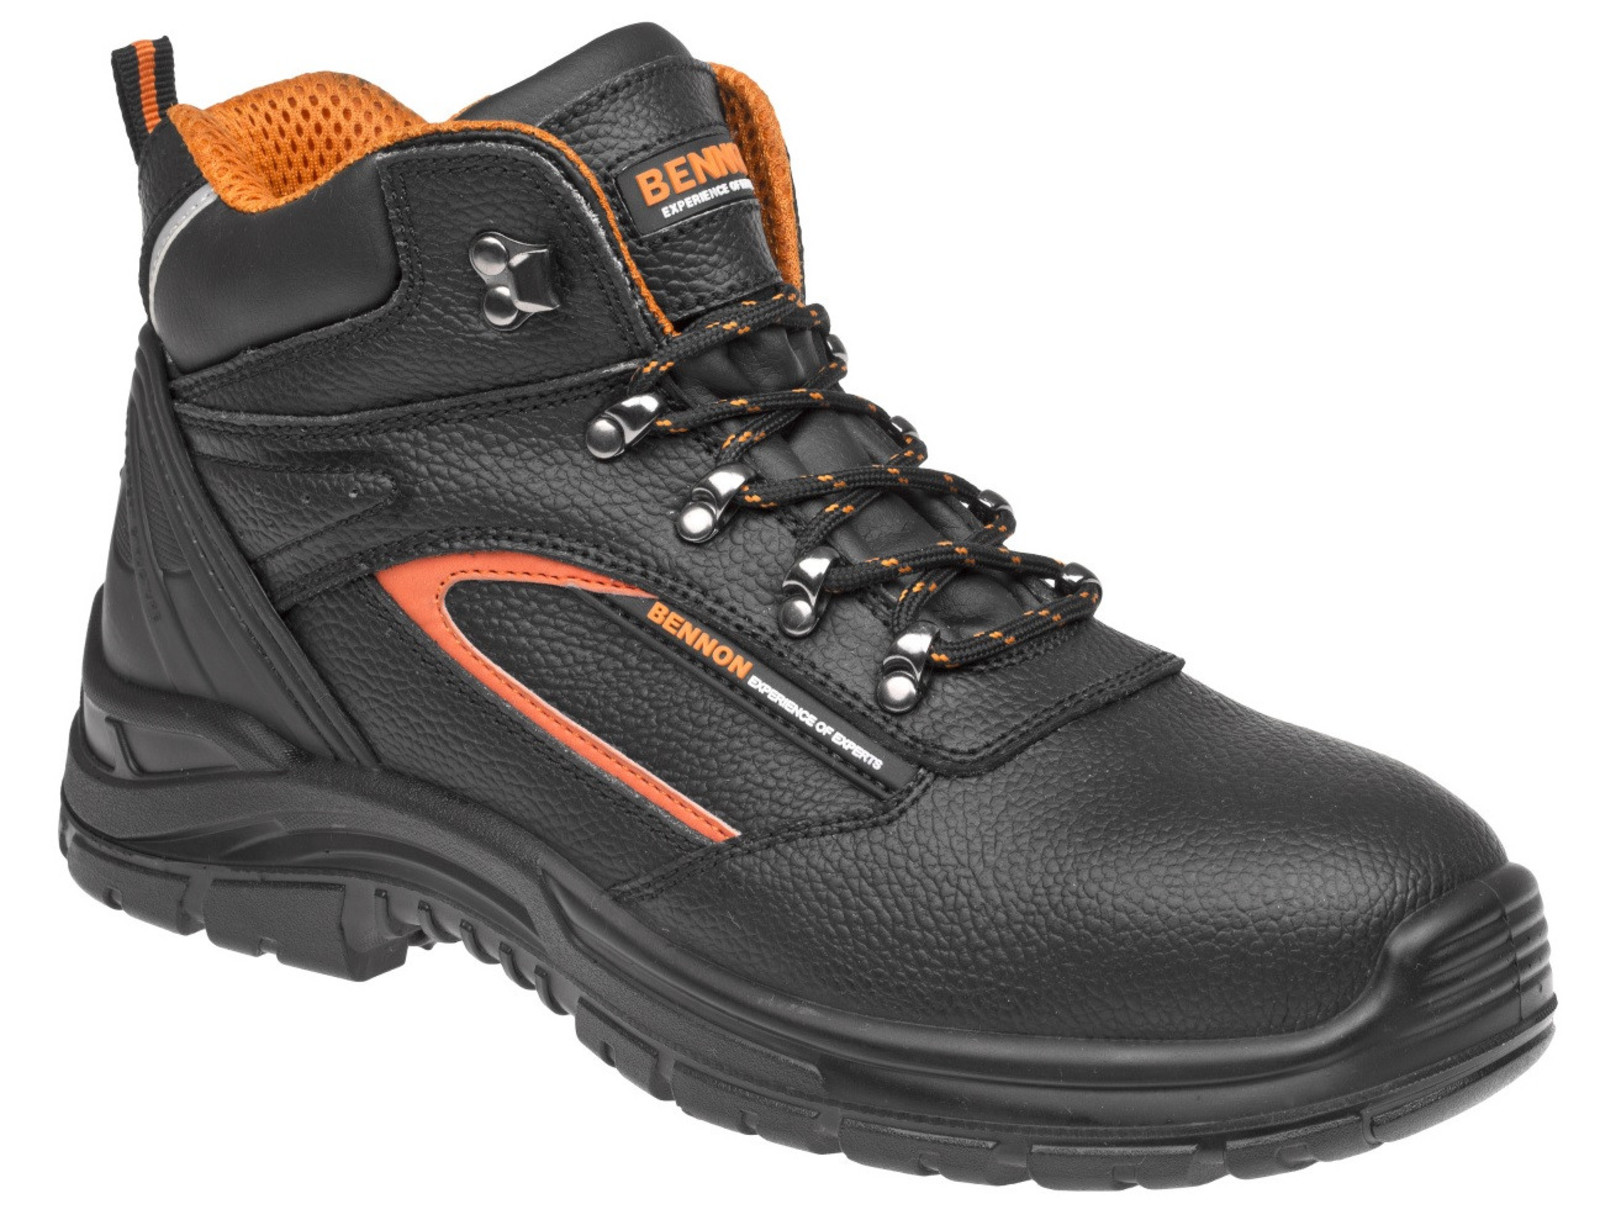 Bezpečnostné topánky Bennon Fortis S3 s membránou - veľkosť: 37, farba: čierna